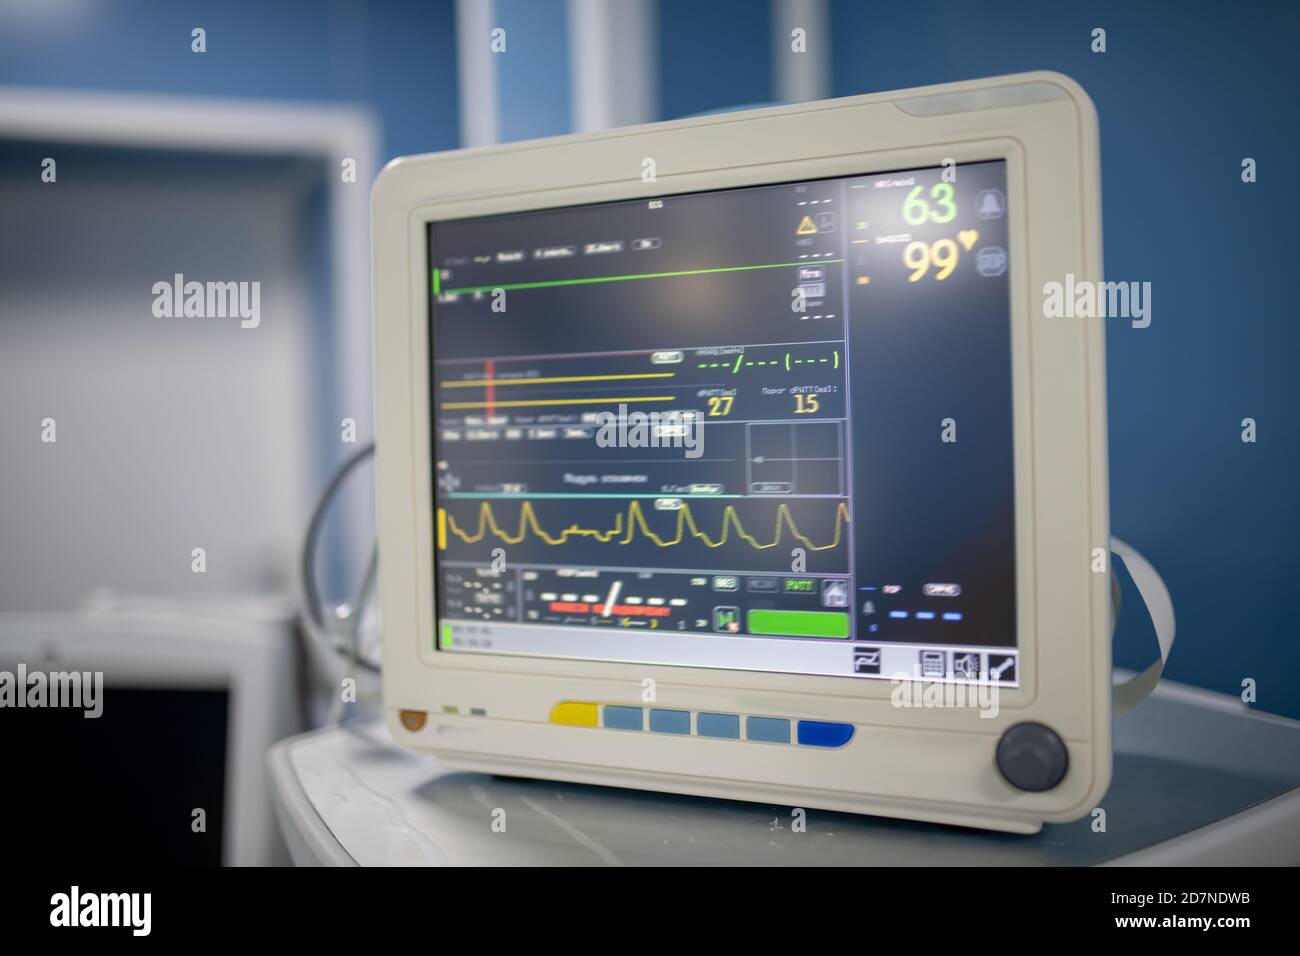 Visualizzazione di apparecchiature mediche elettroniche che mostrano i dati del paziente durante funzionamento Foto Stock